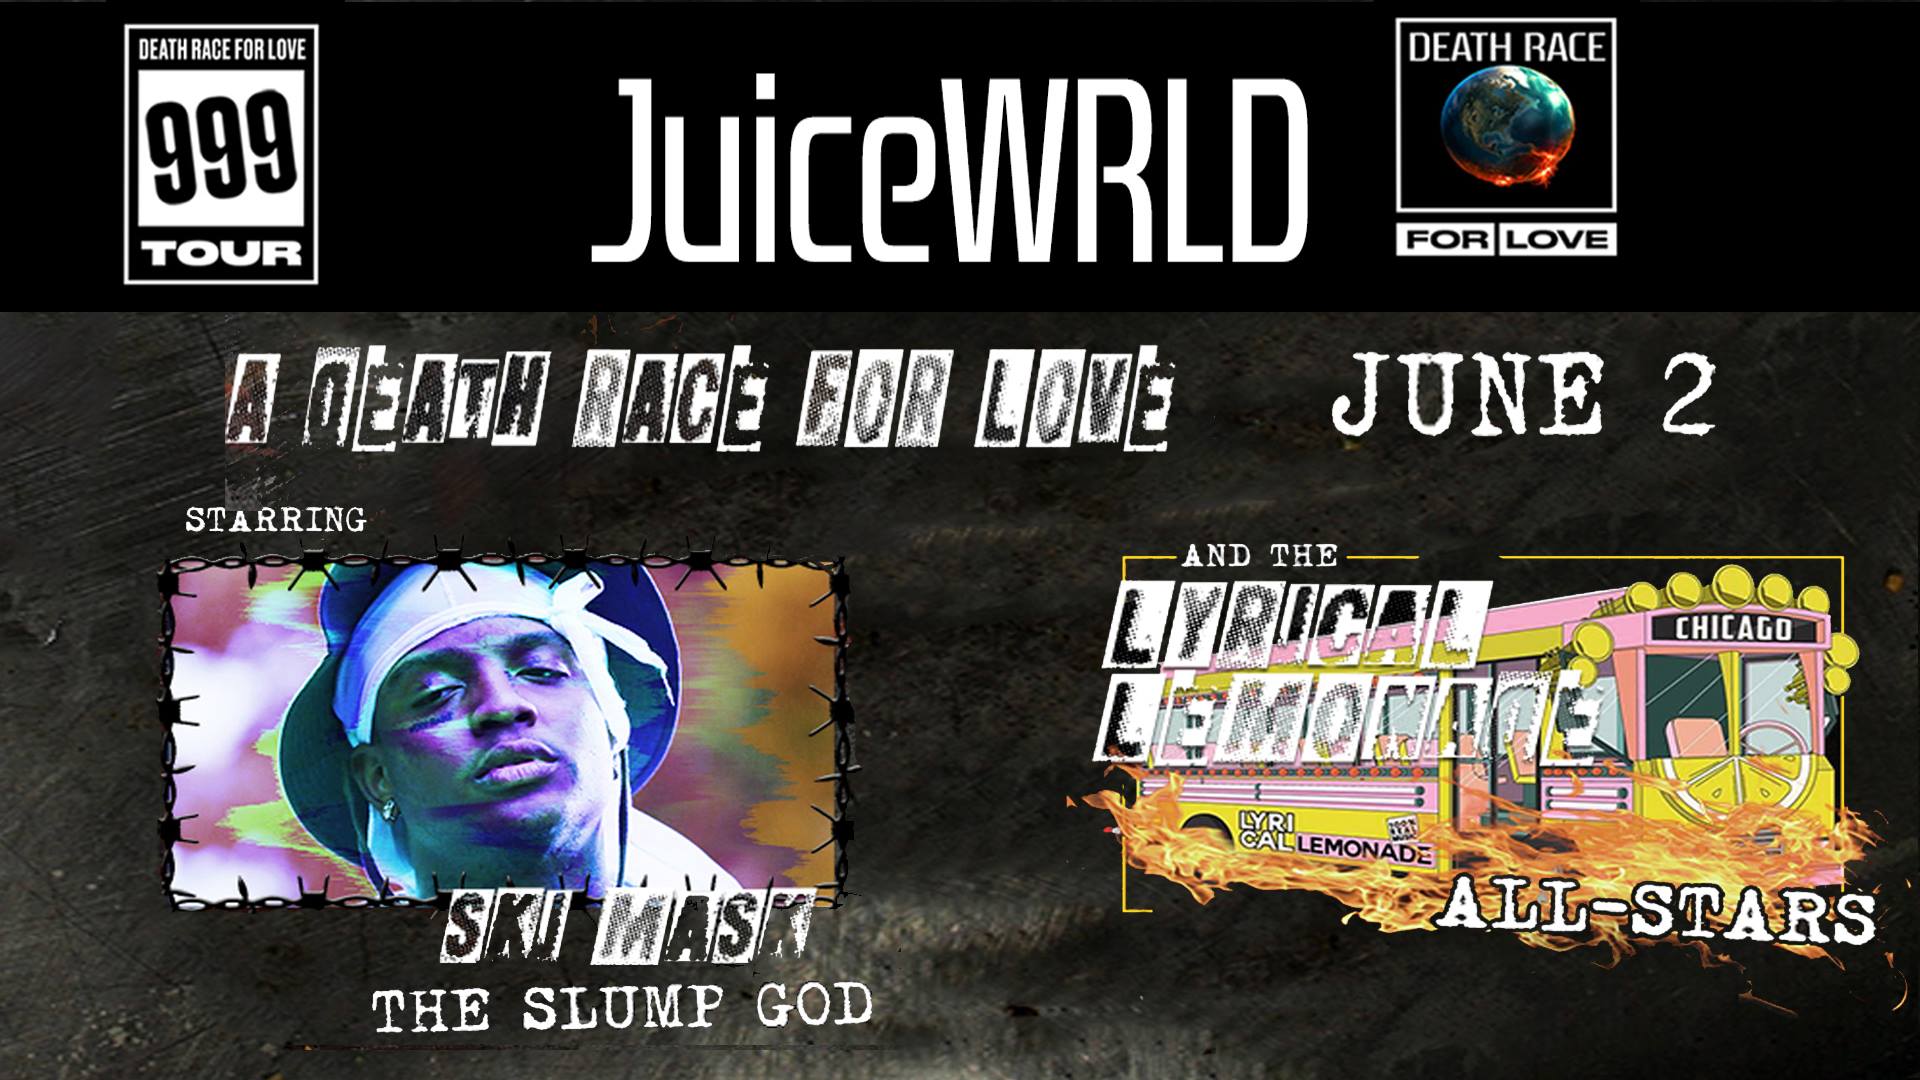 Juice WRLD's Death Race For Love Tour